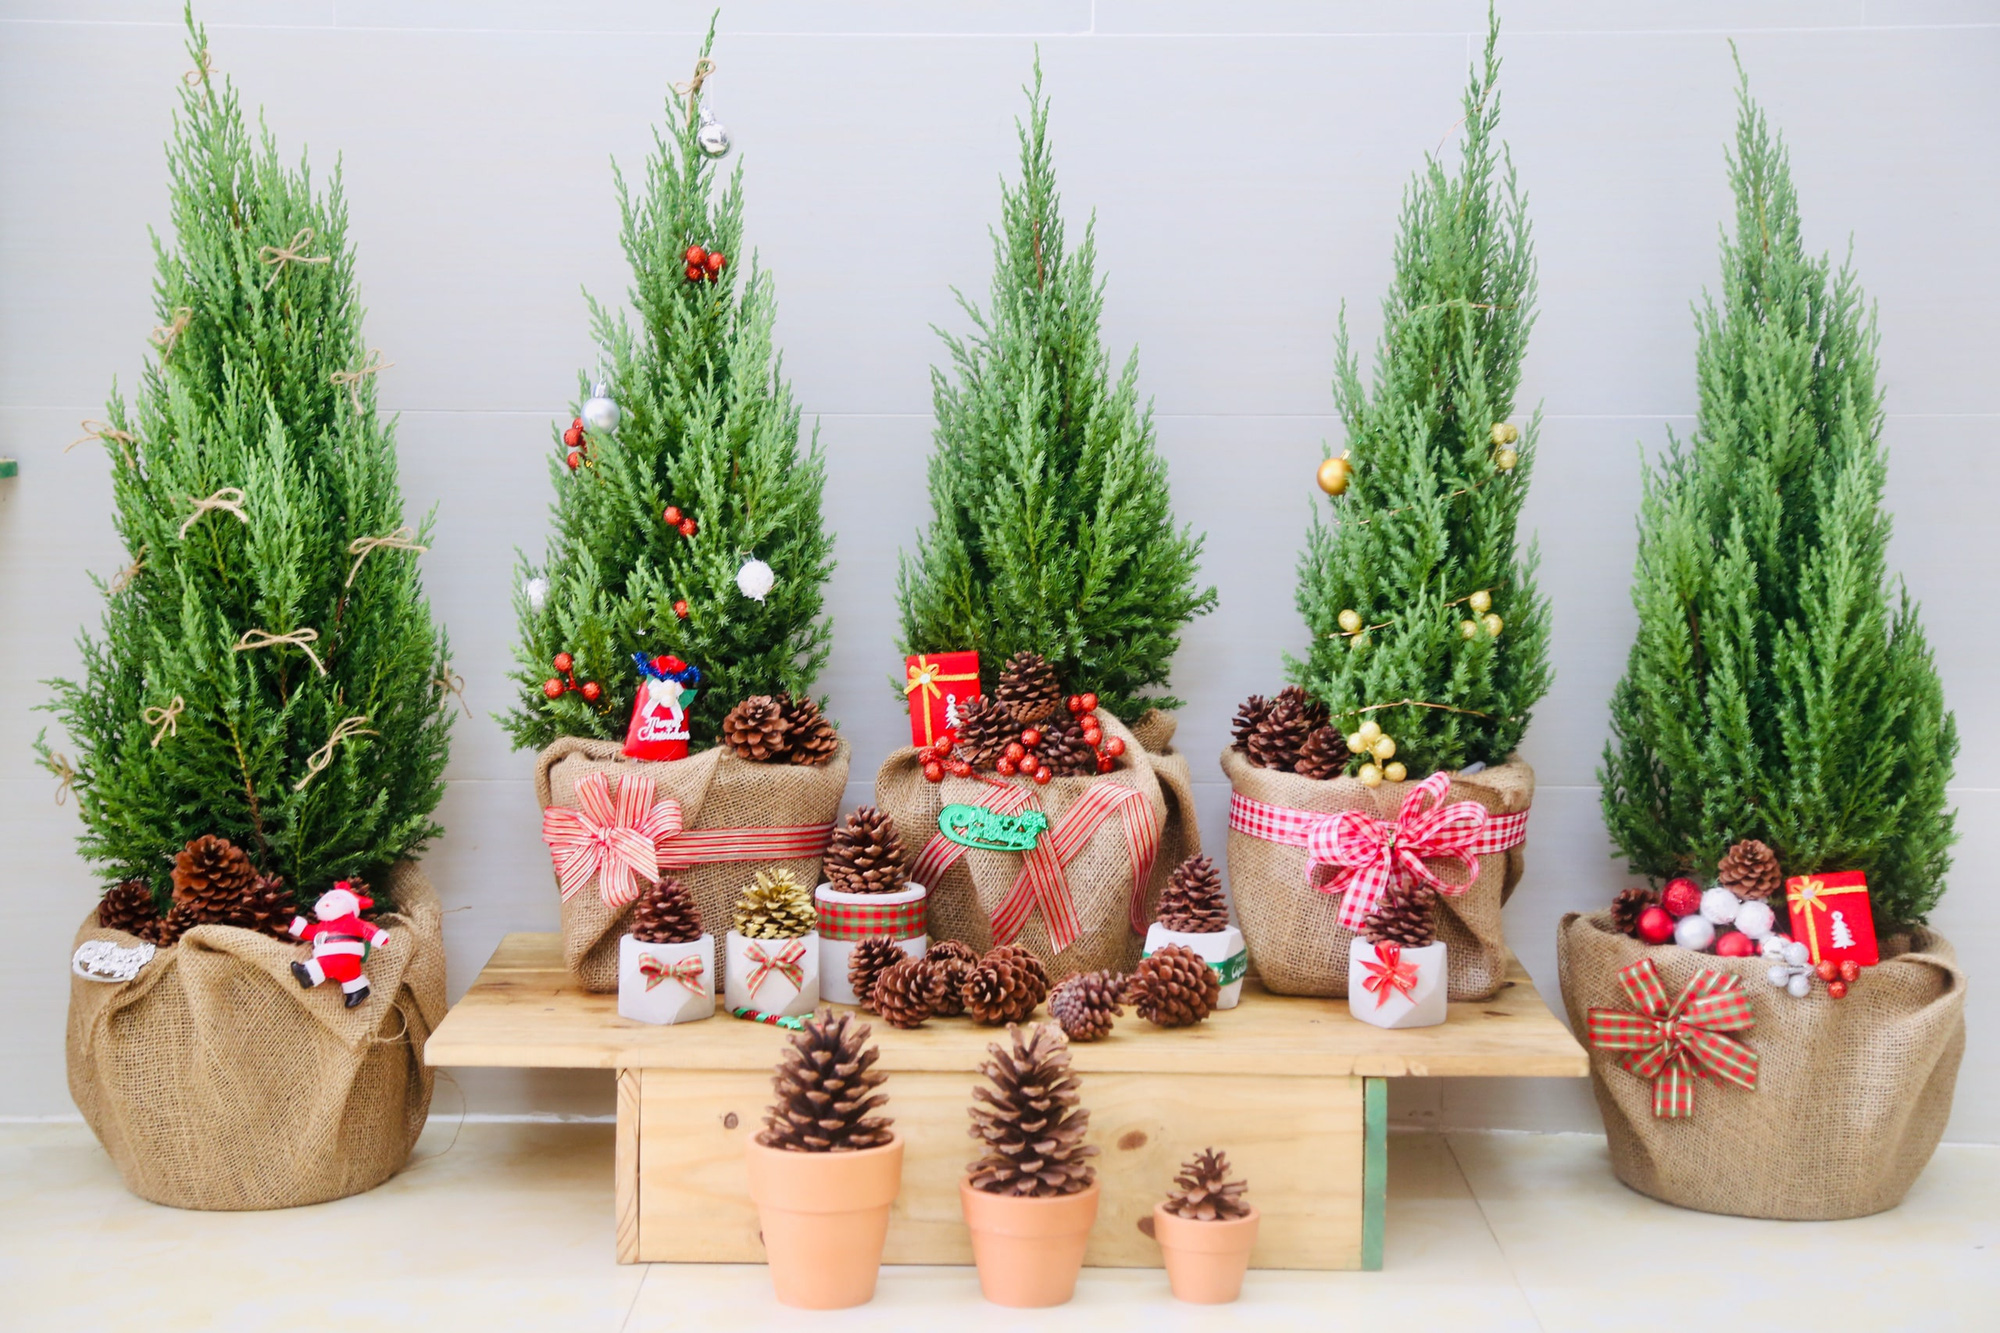 Mang cả không khí Giáng sinh vào nhà với những món đồ trang trí siêu xinh giá chỉ từ 100.000 đồng - Ảnh 2.